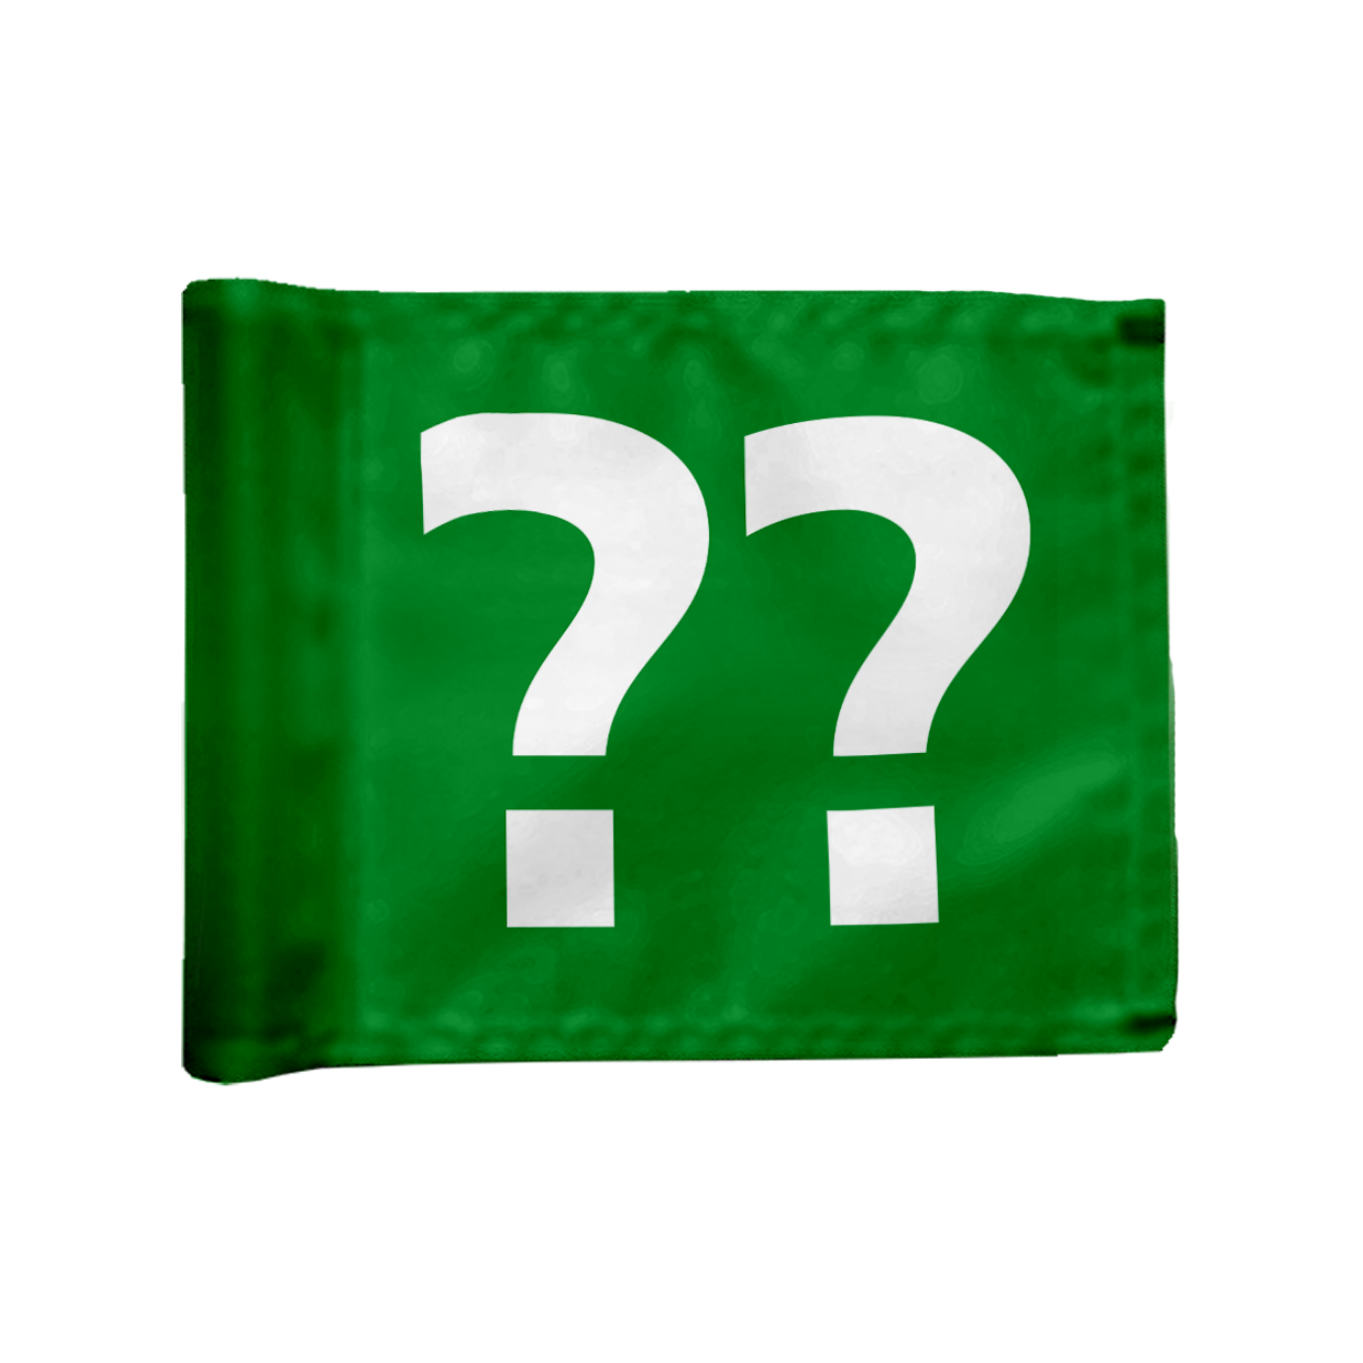 Styckvis Adventure Golf flagga i grön med valfritt hålnummer, 115 gr flaggduk